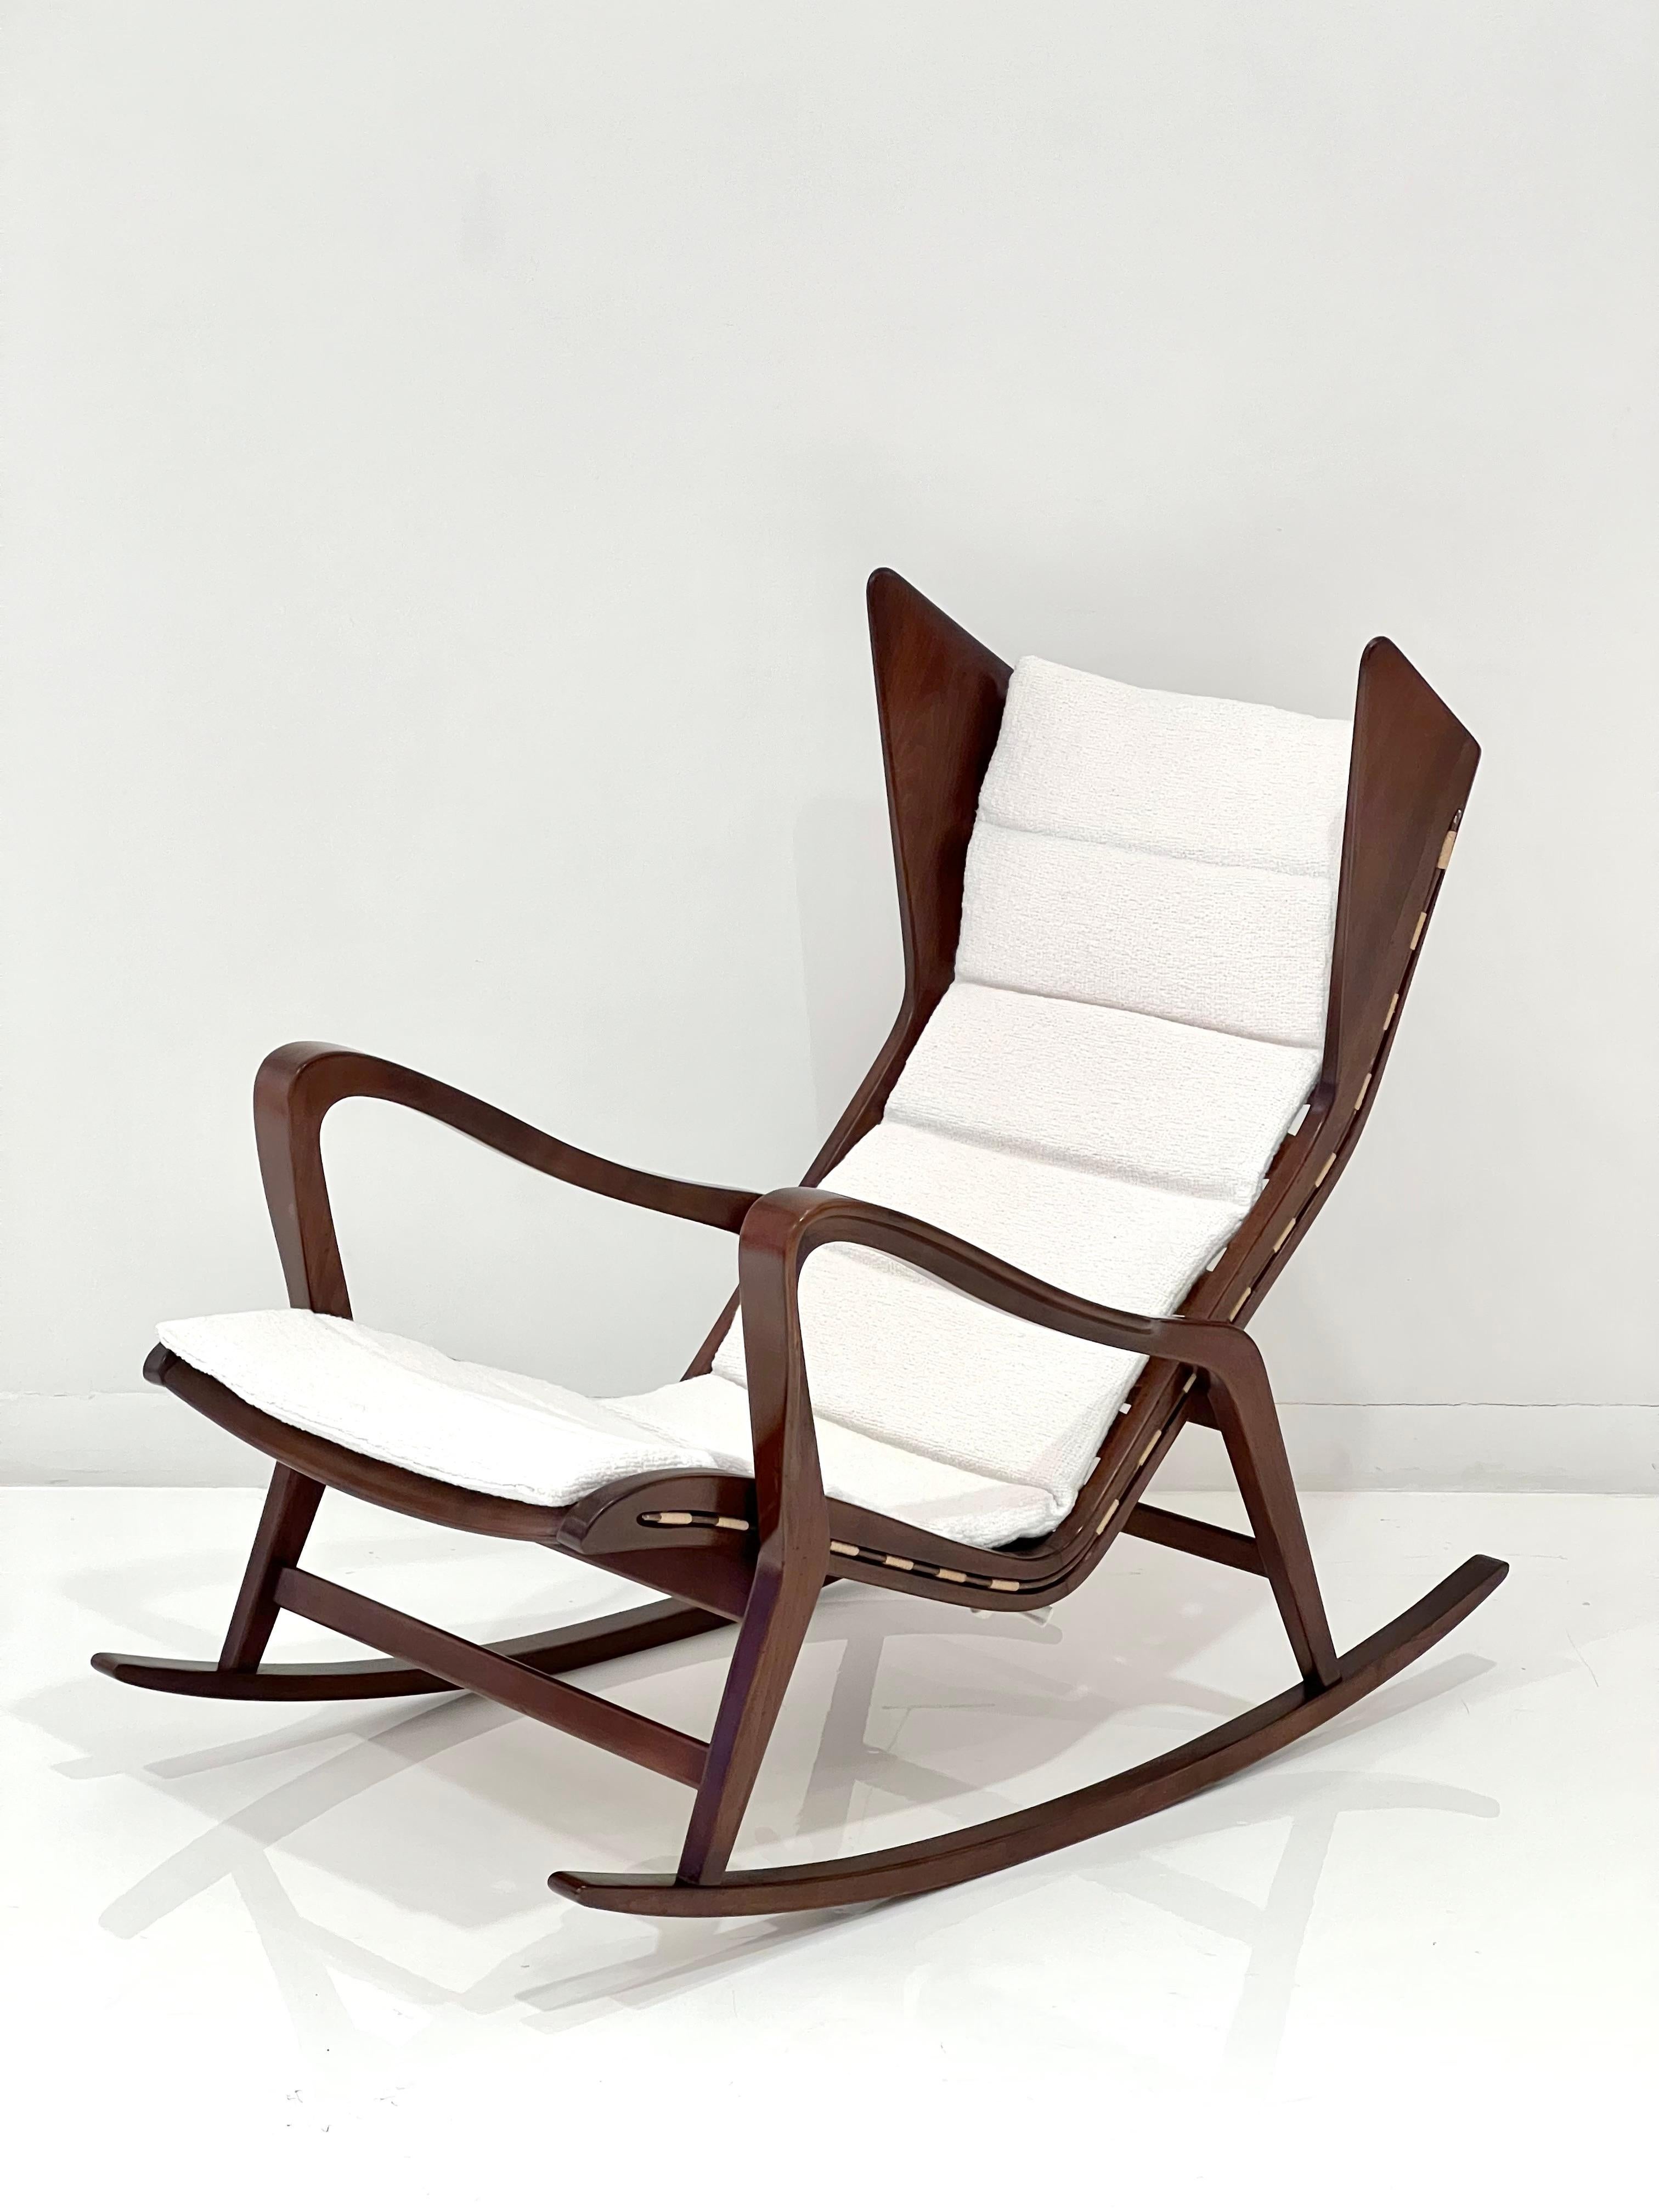 Chaise à bascule en noyer dans le style de Gio Ponti, fabriquée par Cassina. Italie, années 1960.
Nouvellement retapissé avec le coussin d'origine de style cannelé.